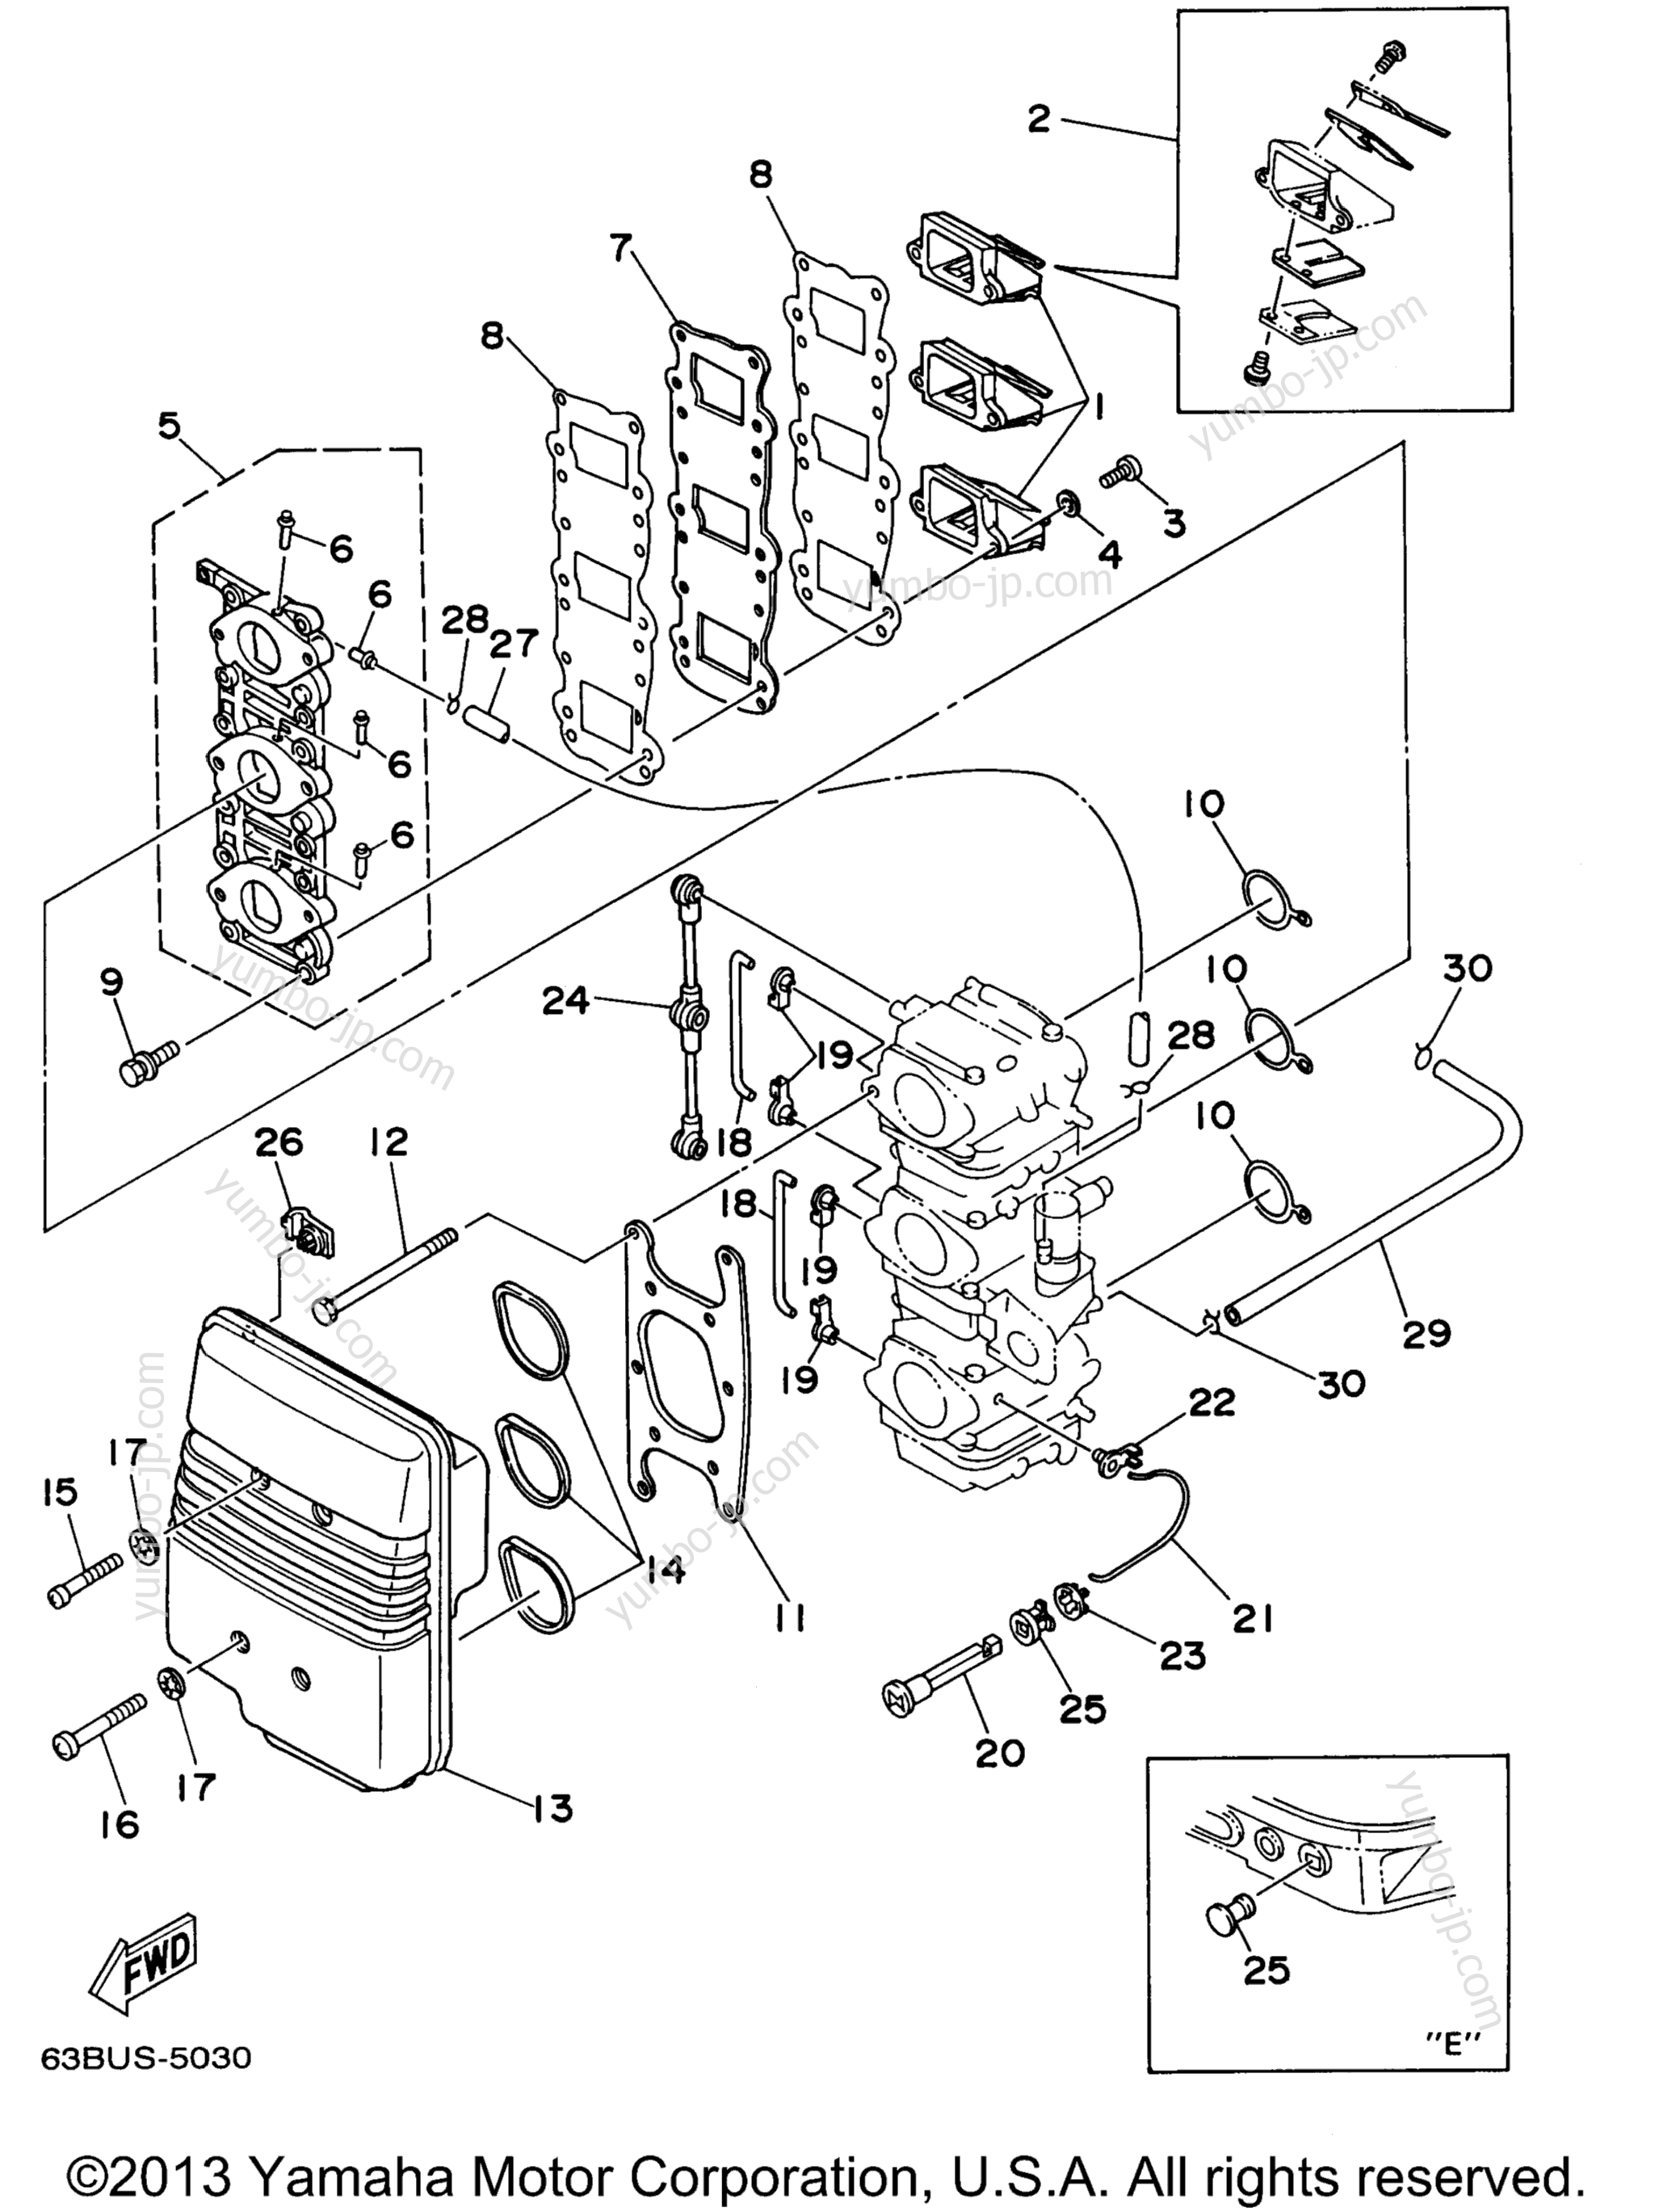 Intake для лодочных моторов YAMAHA P40EJRW_THLW (P40TLRW) 1998 г.